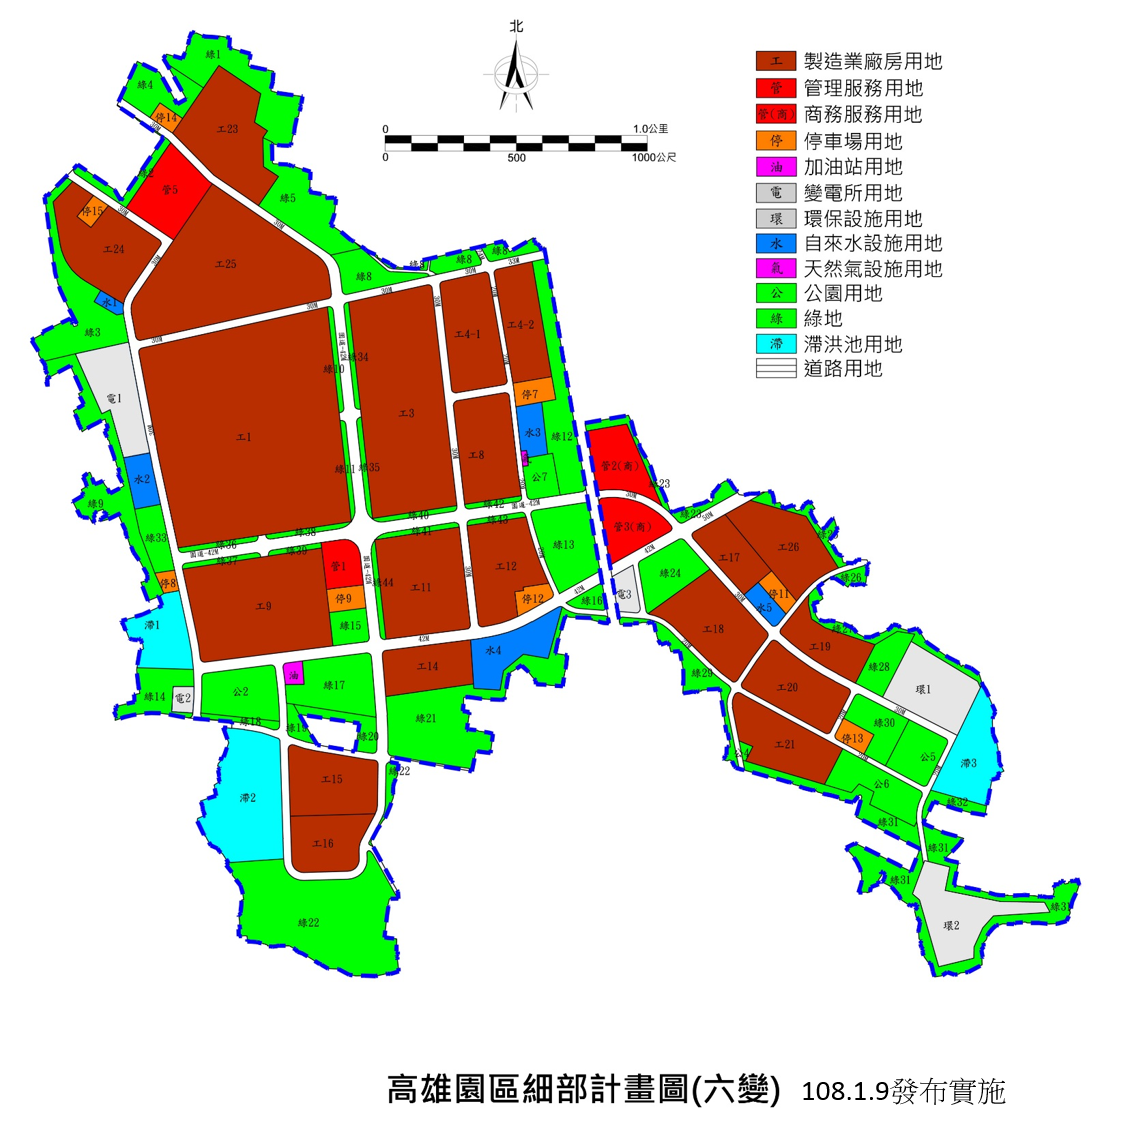 高雄園區細部計畫示意圖，用以表示高雄園區土地都市計畫之土地使用分區規劃情形。另開視窗下載高雄園區土地使用計畫示意圖pdf檔